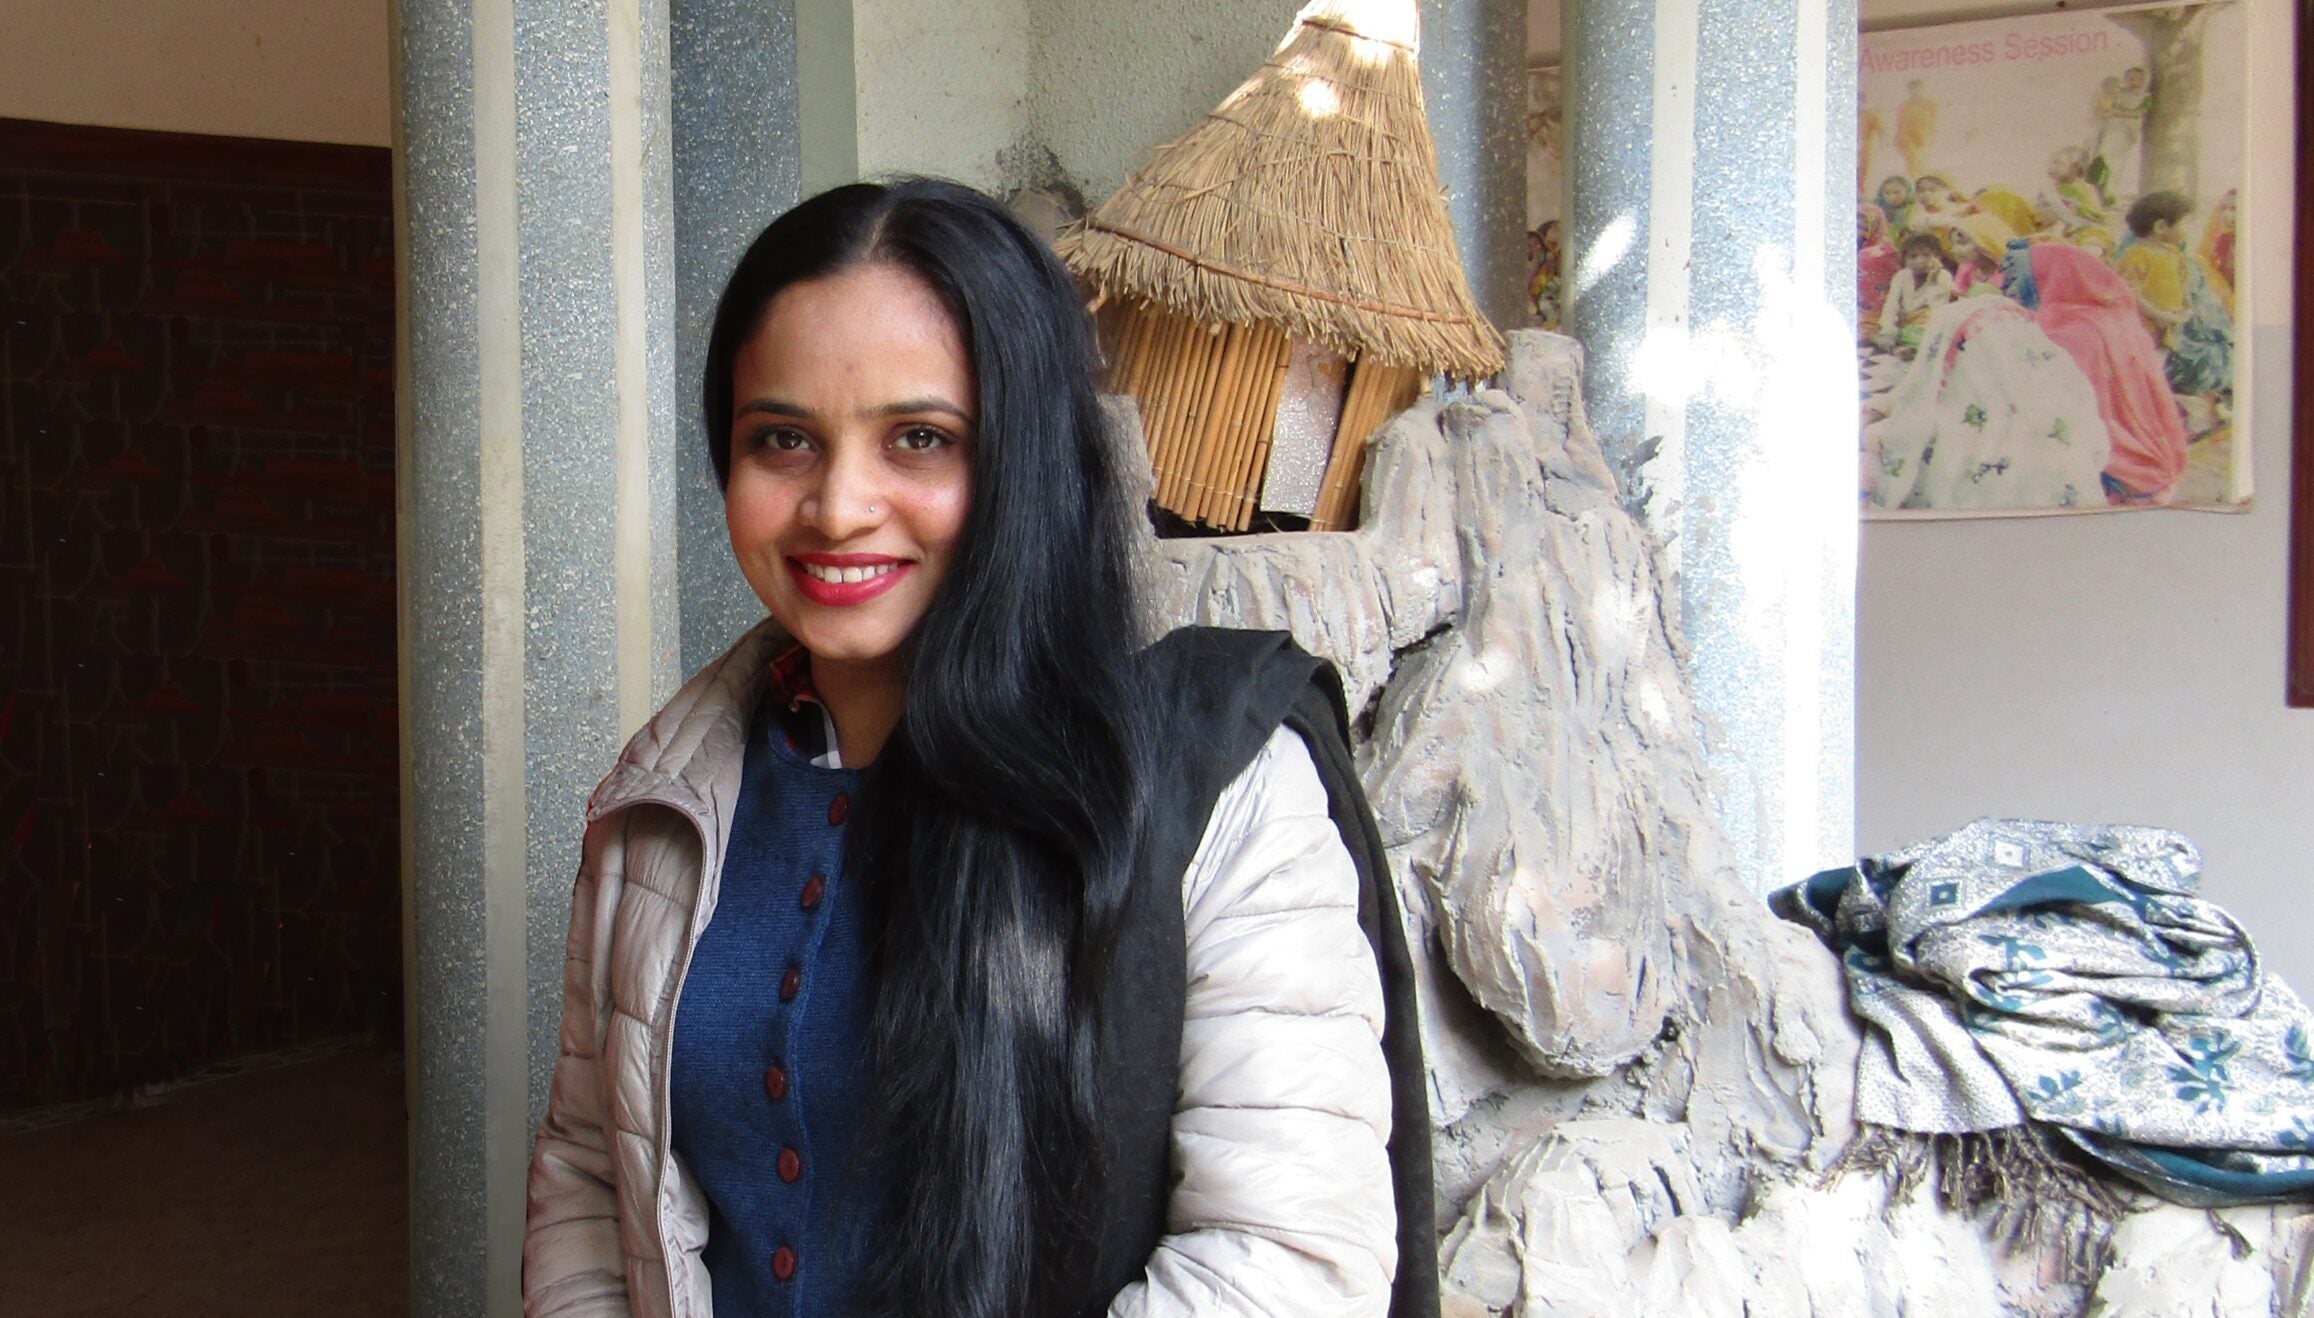 Una mujer paquistaní con una bata blanca sonríe para un retrato